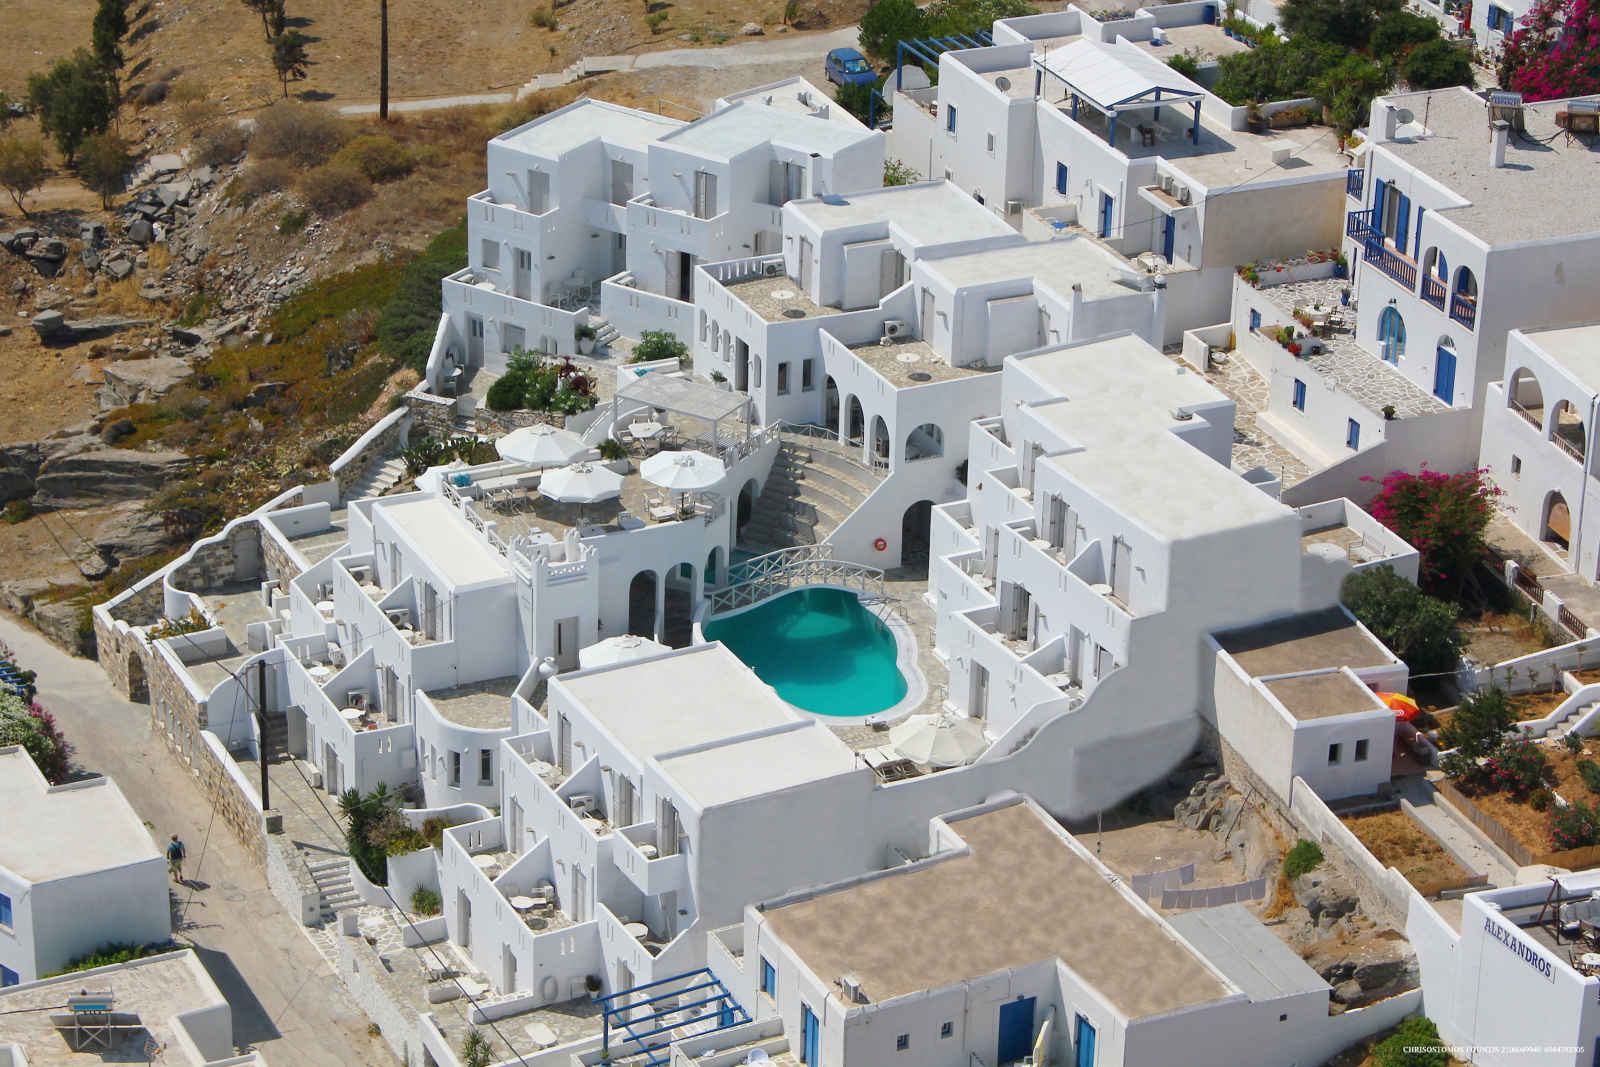 Grèce - Iles grecques - Les Cyclades - Paros - Hôtel Kanale's Rooms & Suites 4*